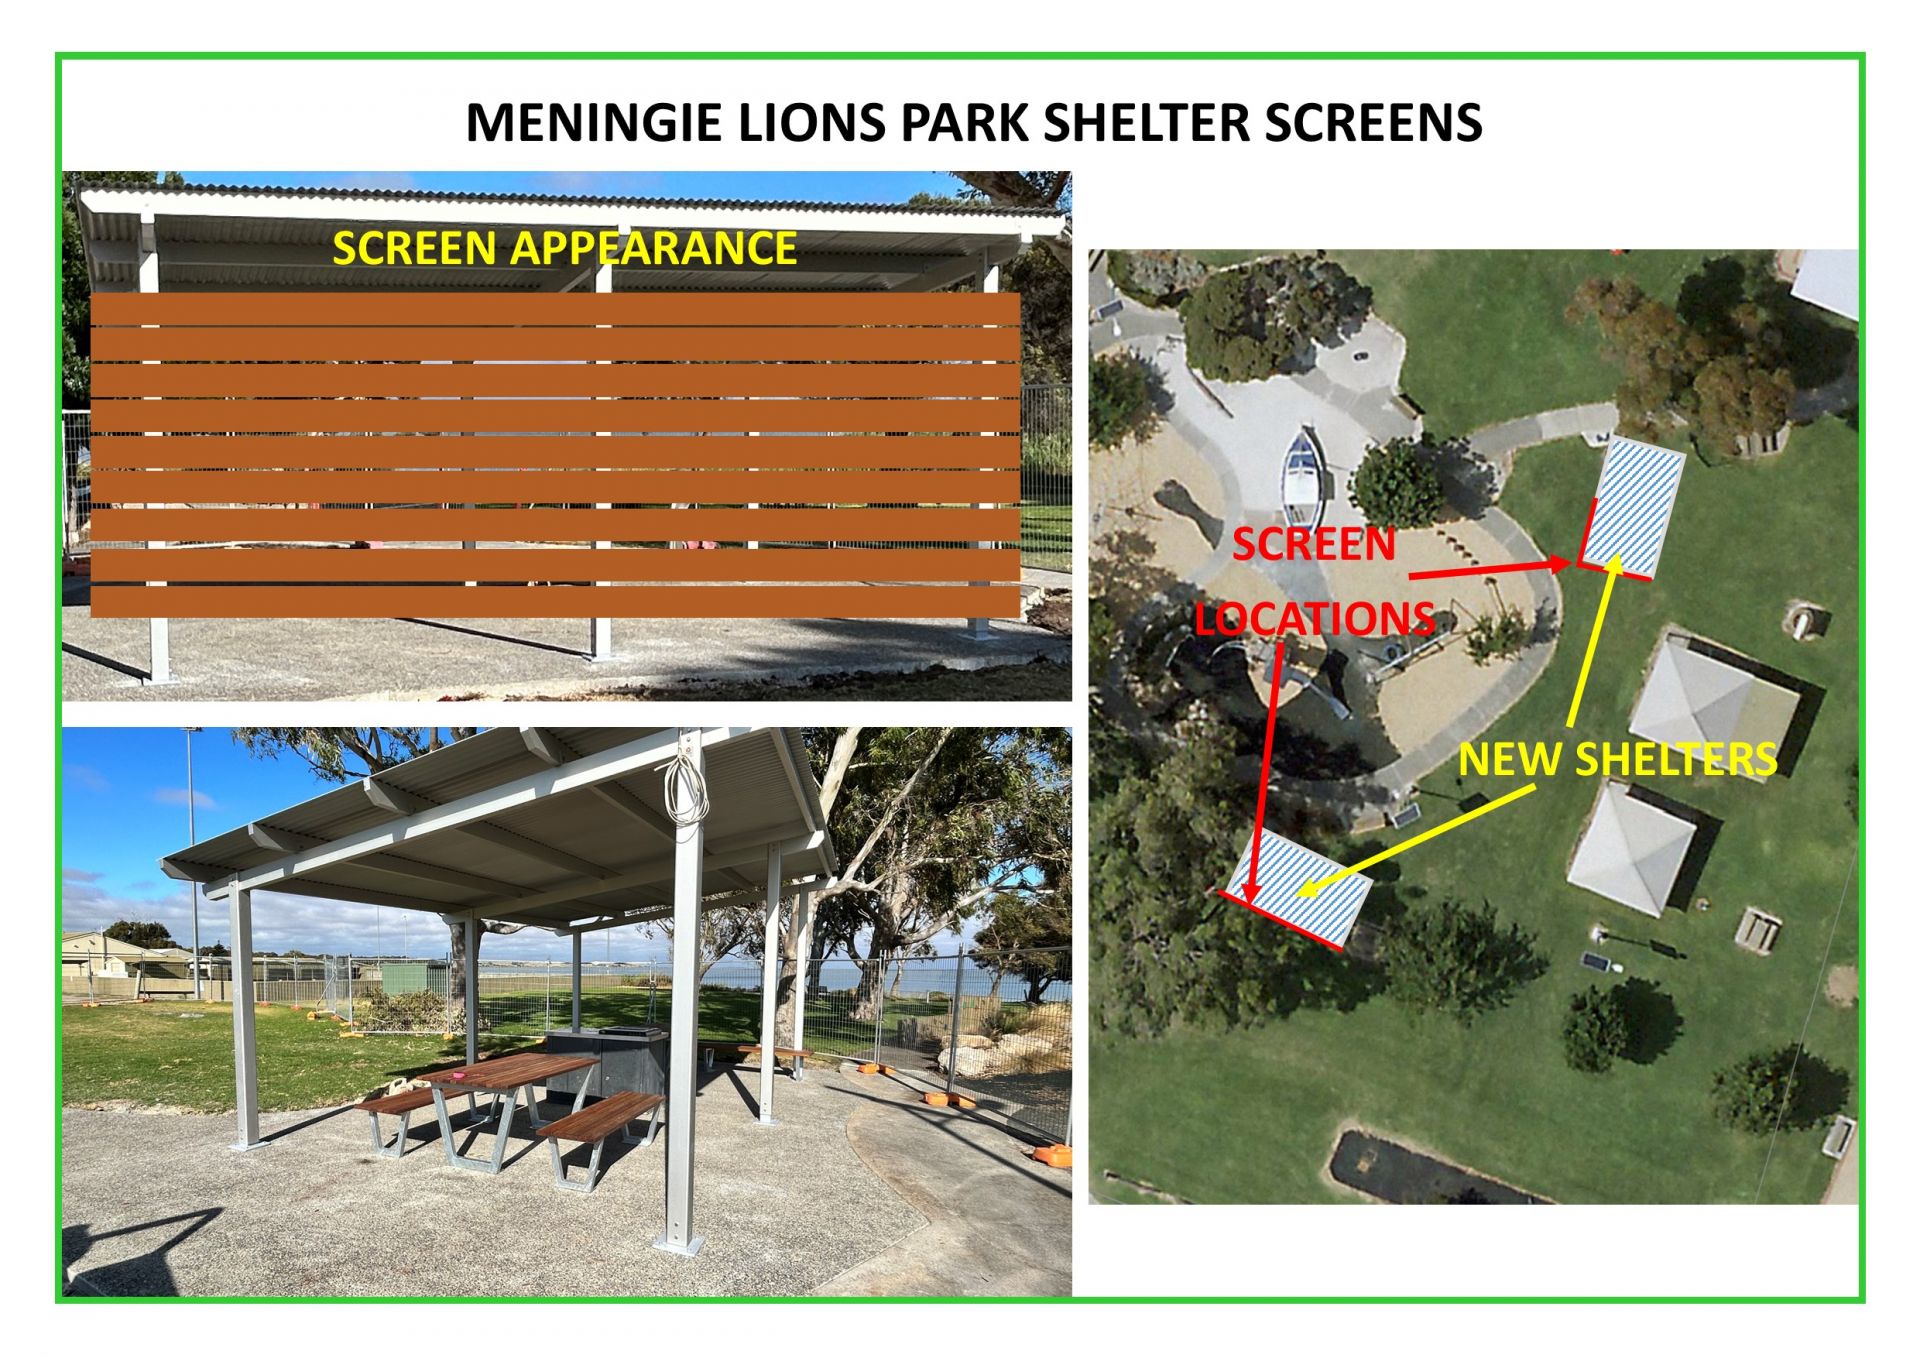 Design for shelter screens at Meningie Lions Park